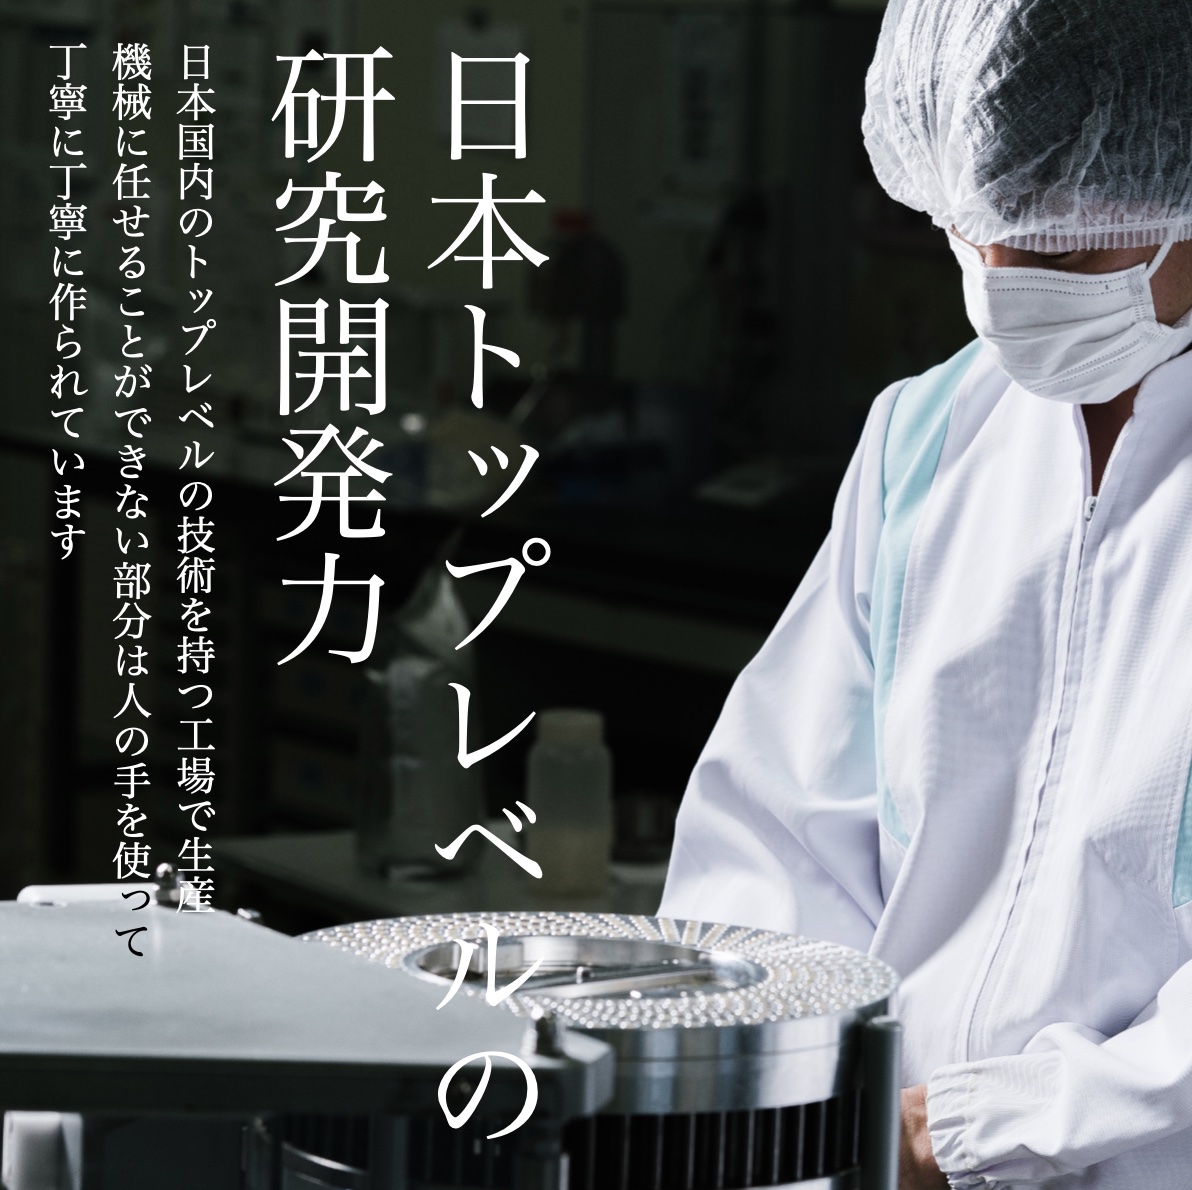 日本国内工場製造で厳密な酸化防止対策をしている更年期専門店オアディスワンの酵素サプリ「なまやさいのかわり」のイメージ